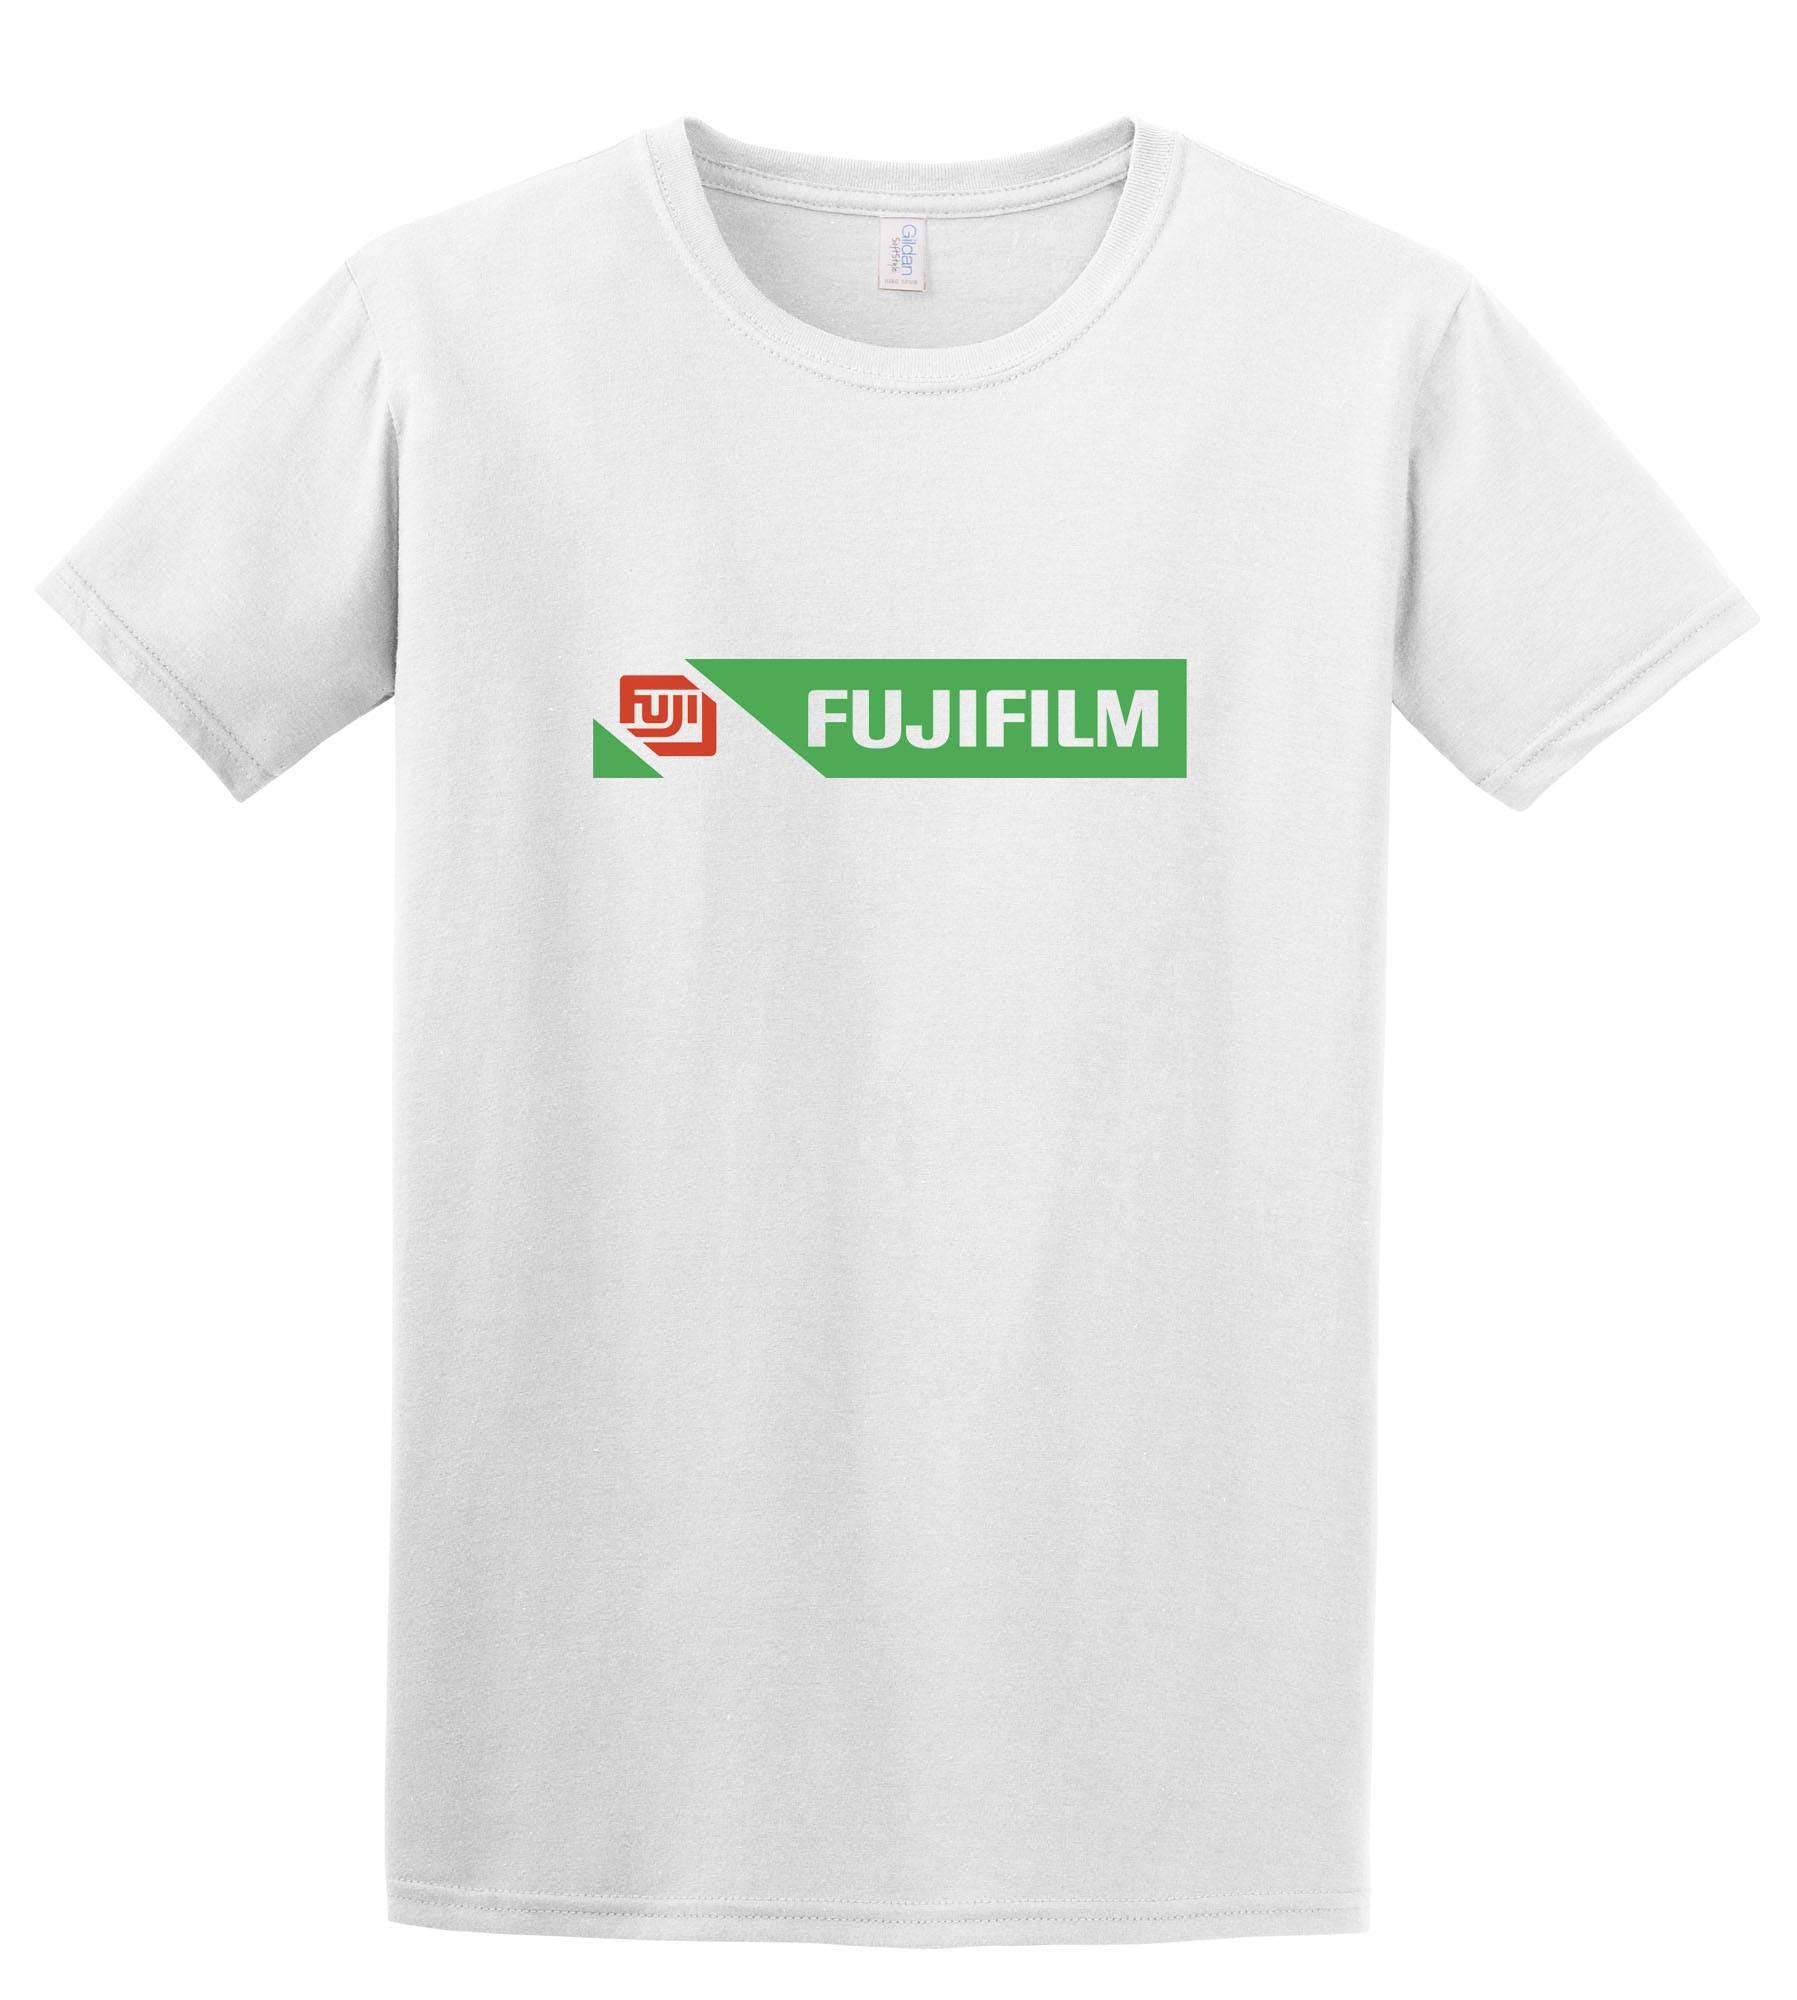 kig ind automat Udflugt Vintage Fujifilm Camera Logo T-shirt Photography - Etsy